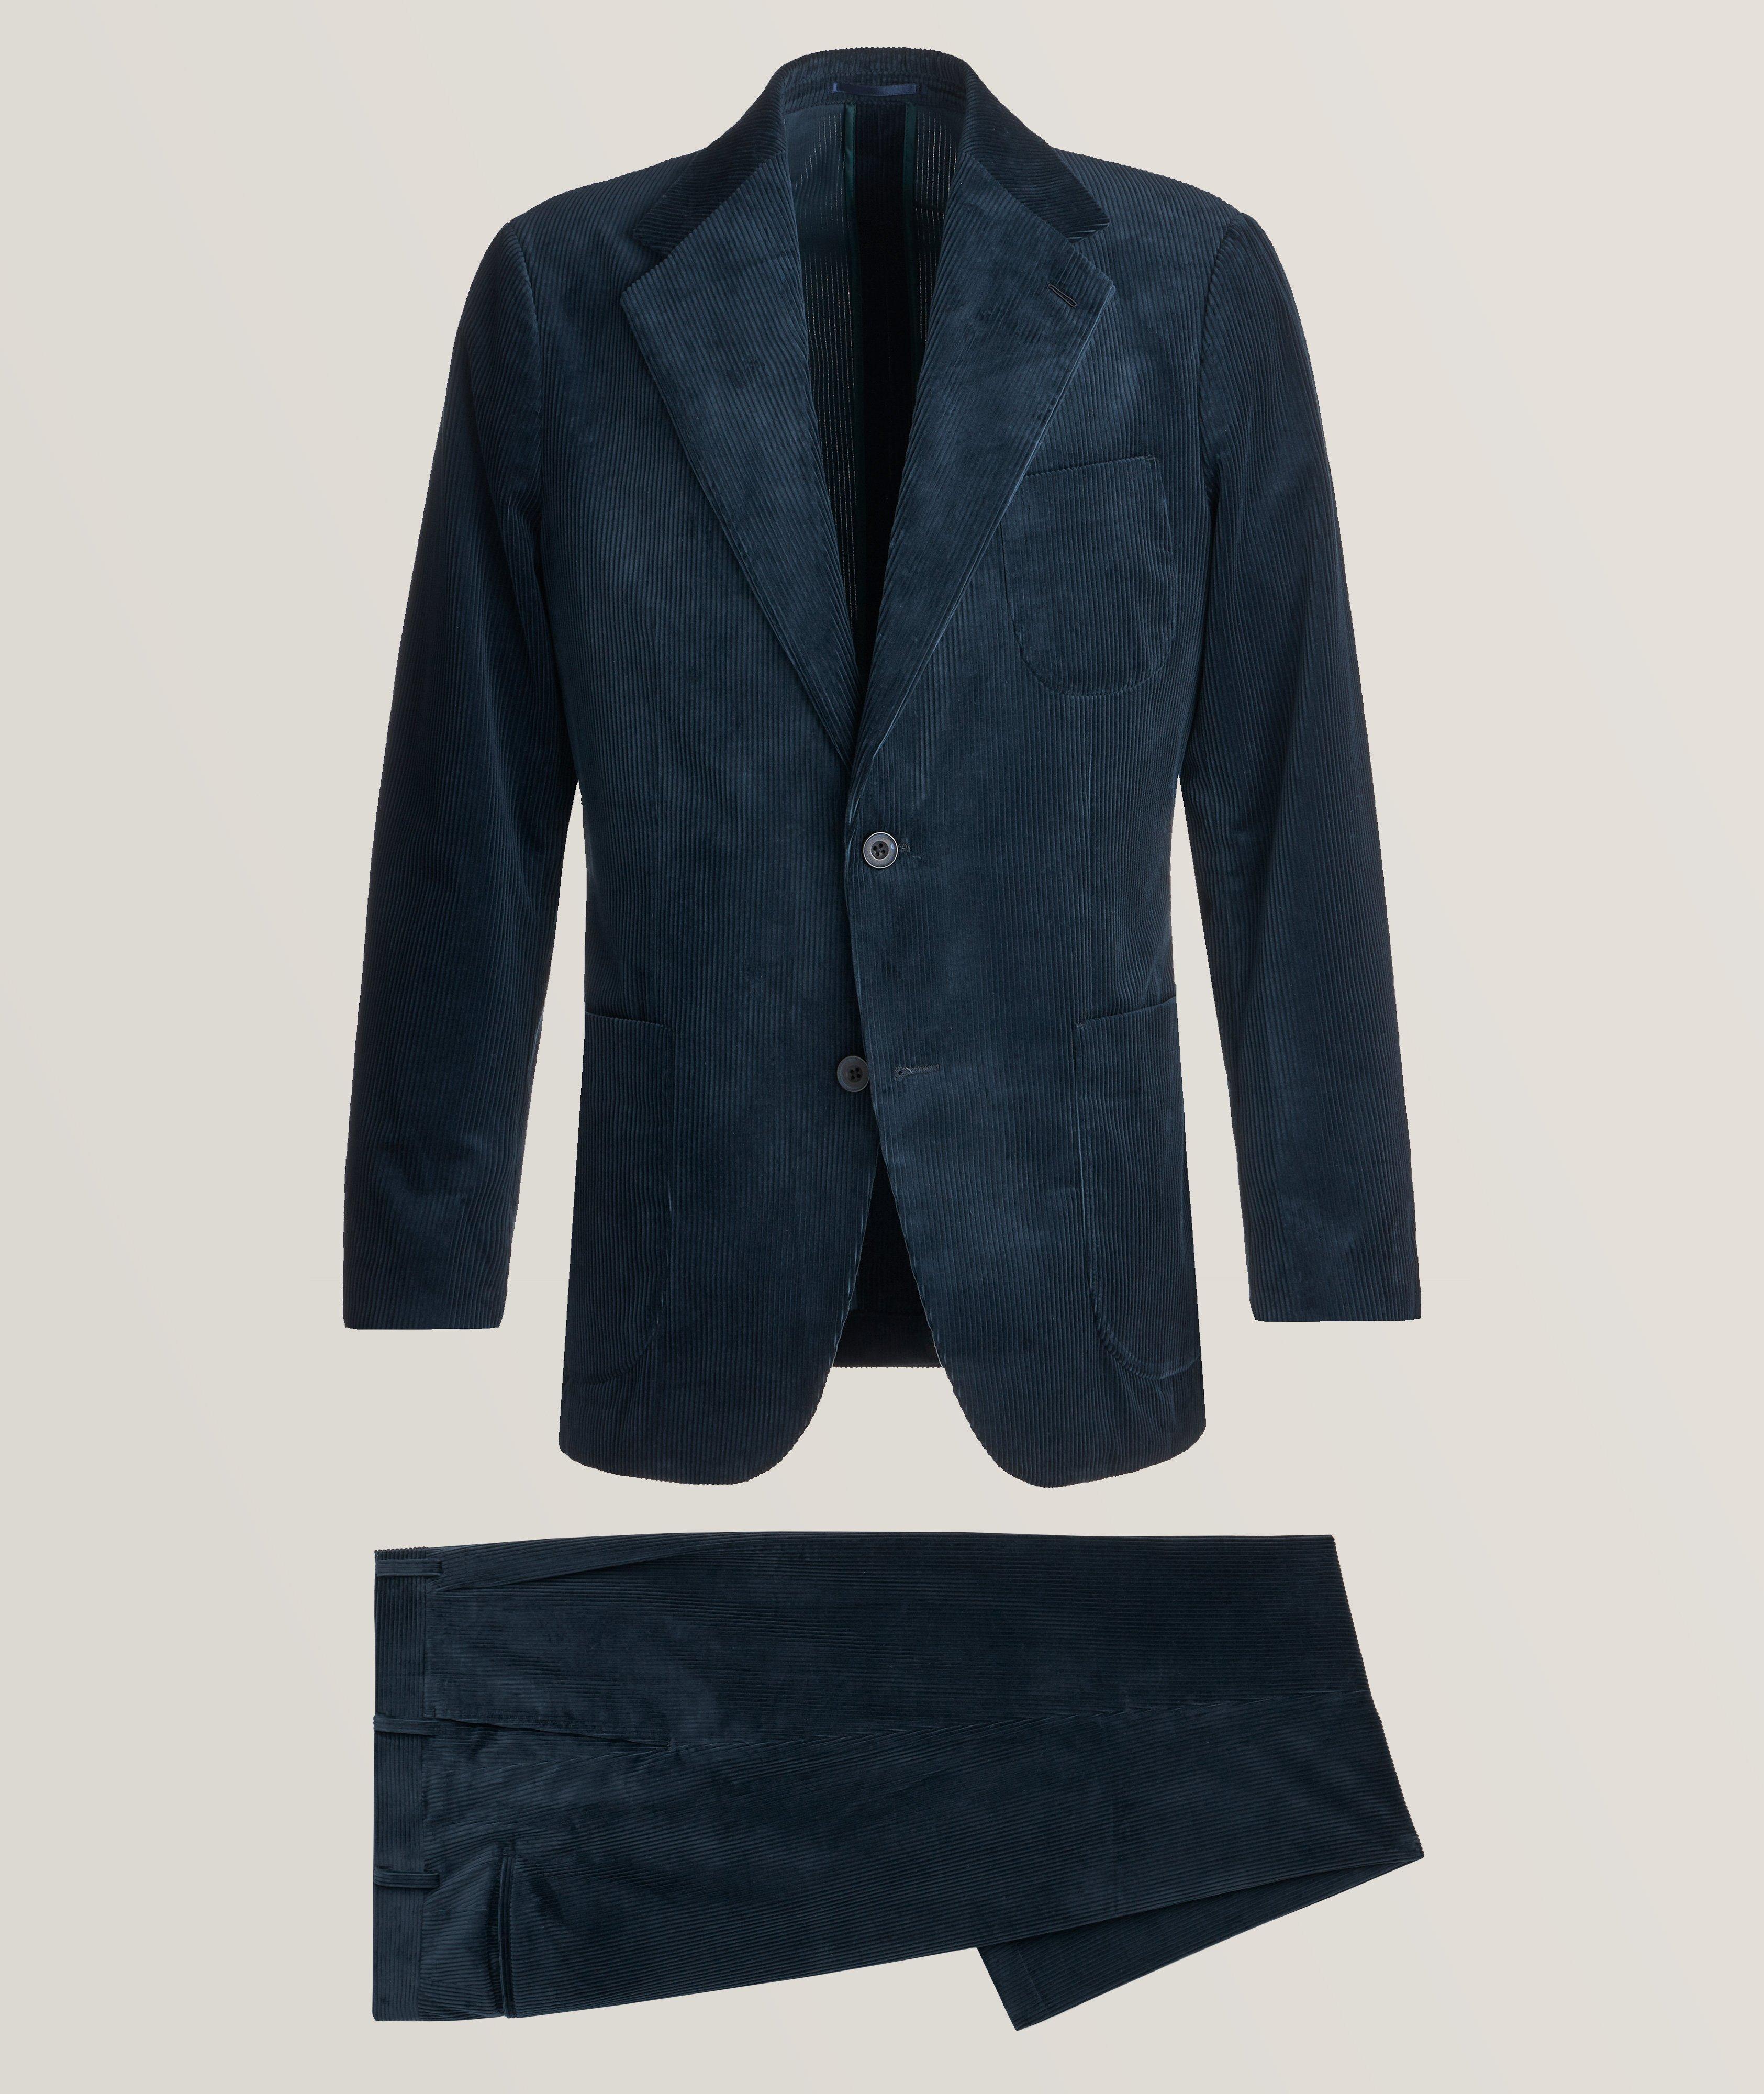 Harold Corduroy Cotton Suit, Suits